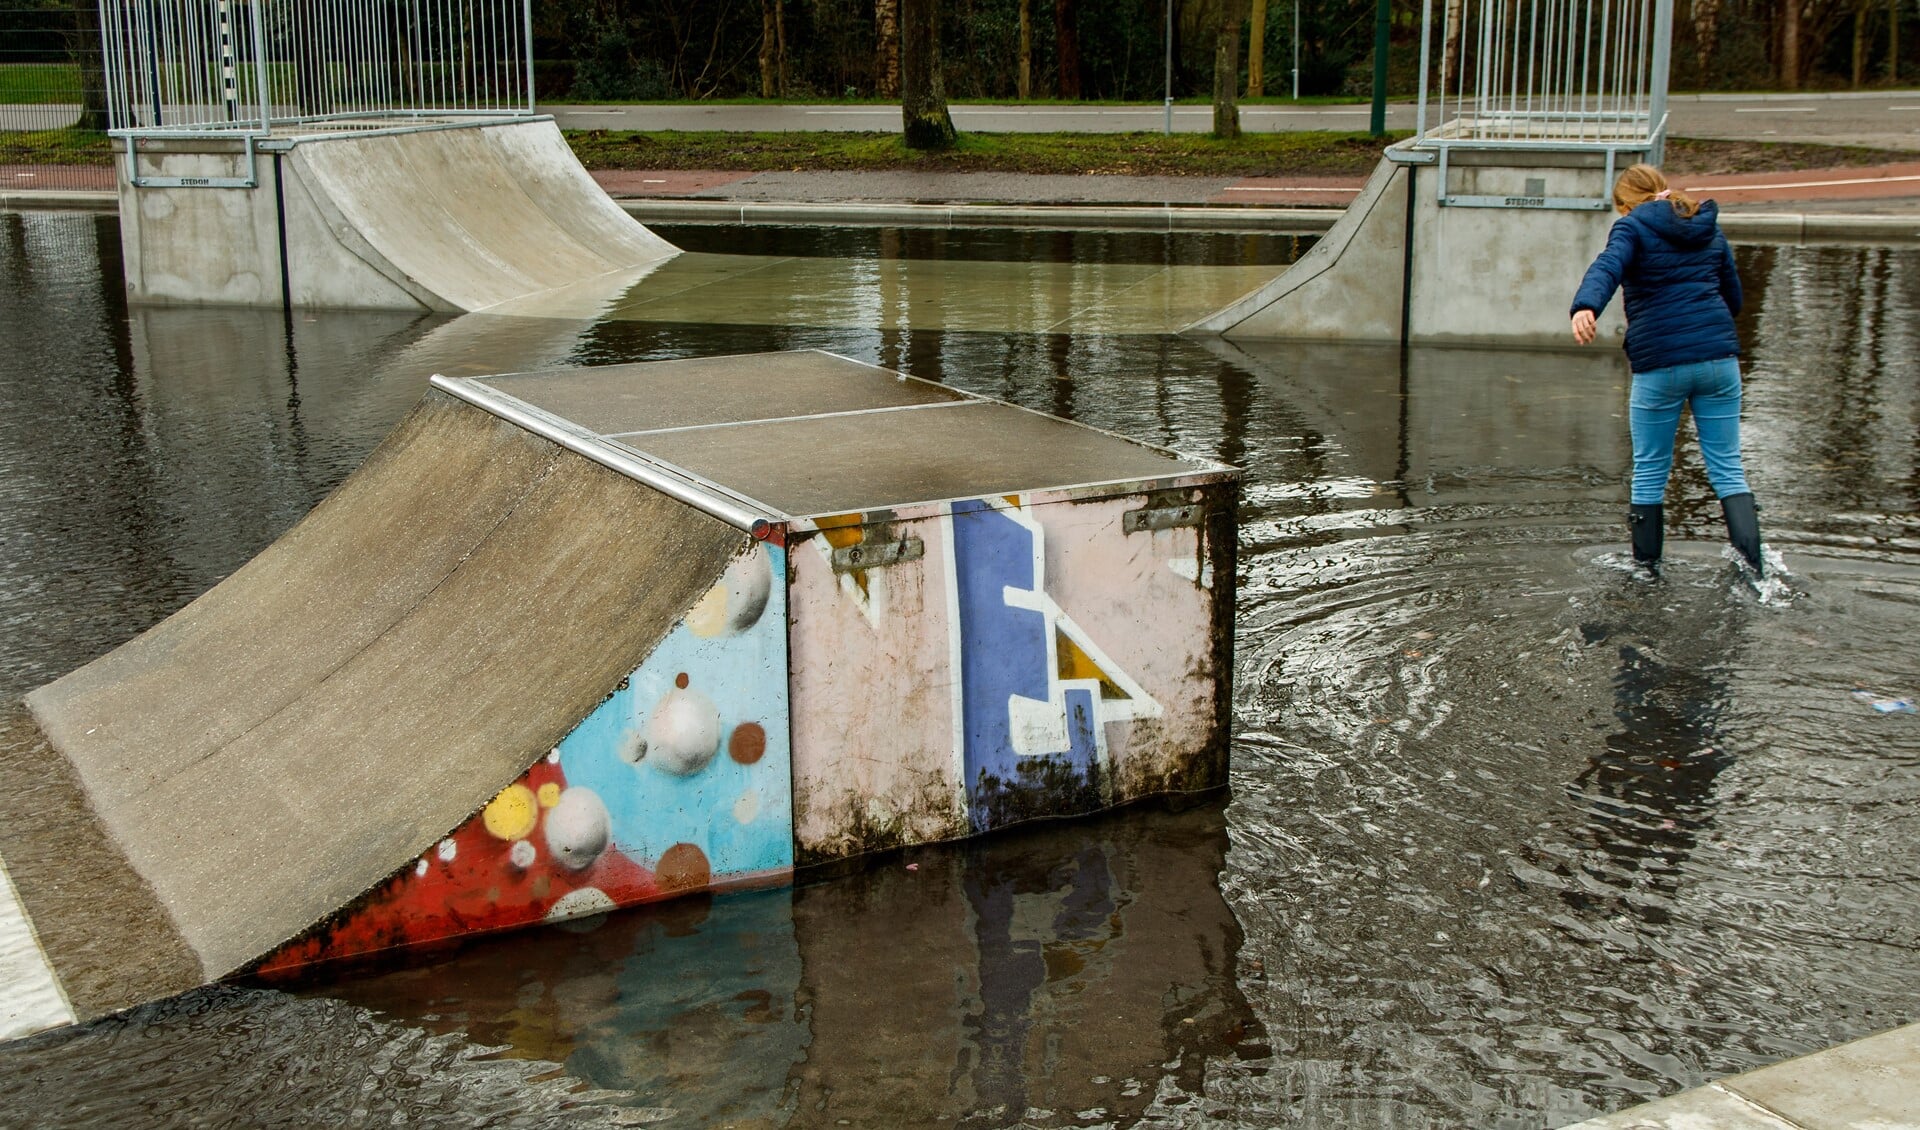 Niet normaal hoeveel water er steeds op de skatebaan staat.